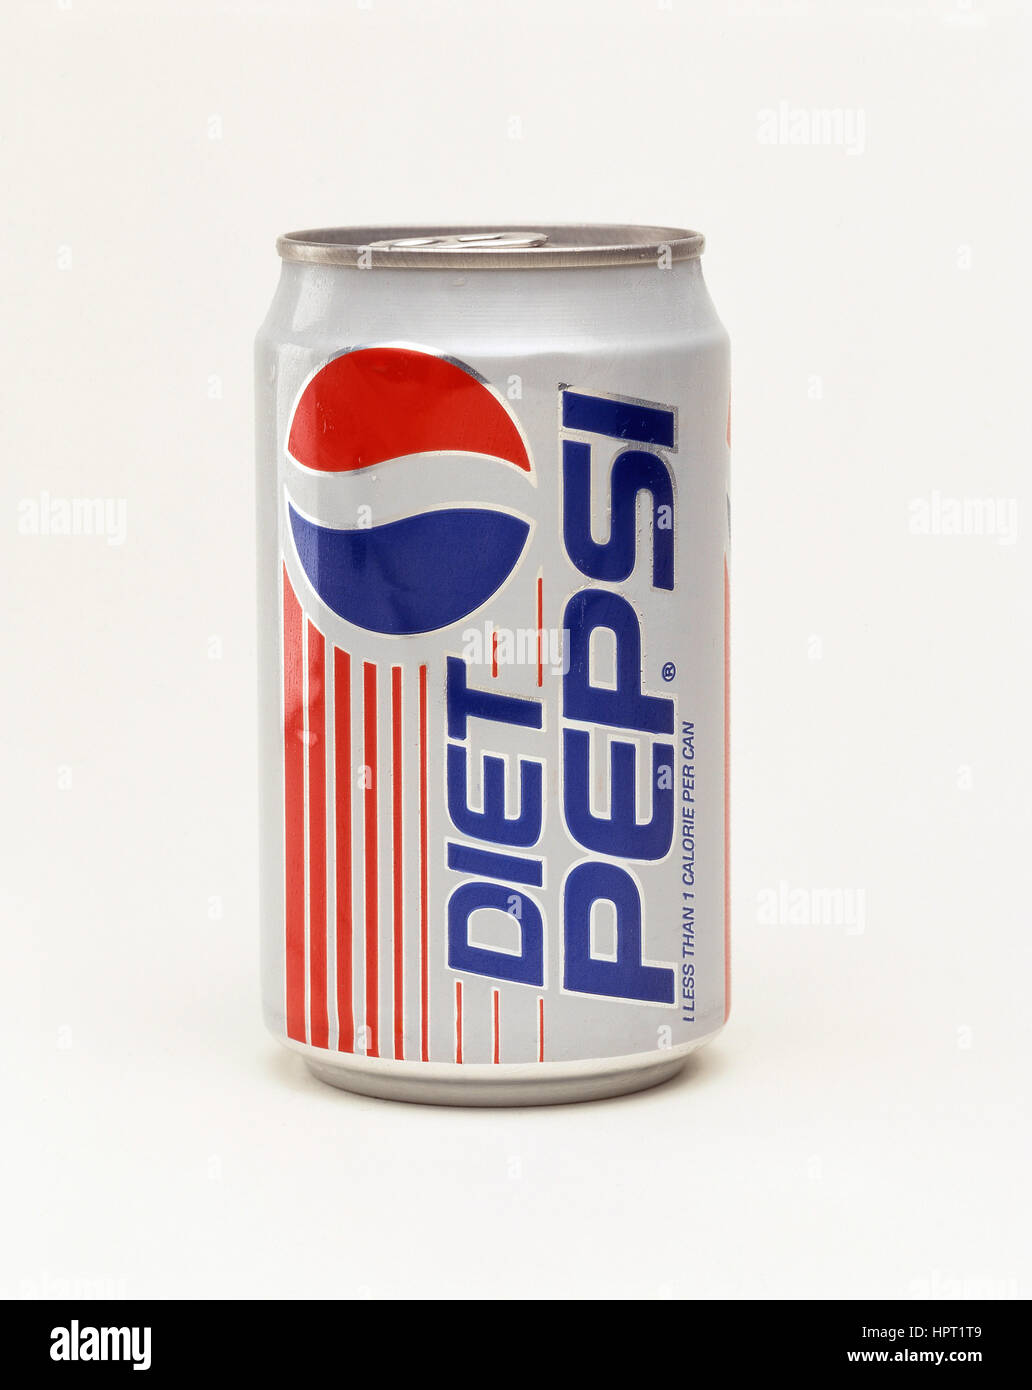 Retrò può di dieta Pepsi, England, Regno Unito Foto Stock